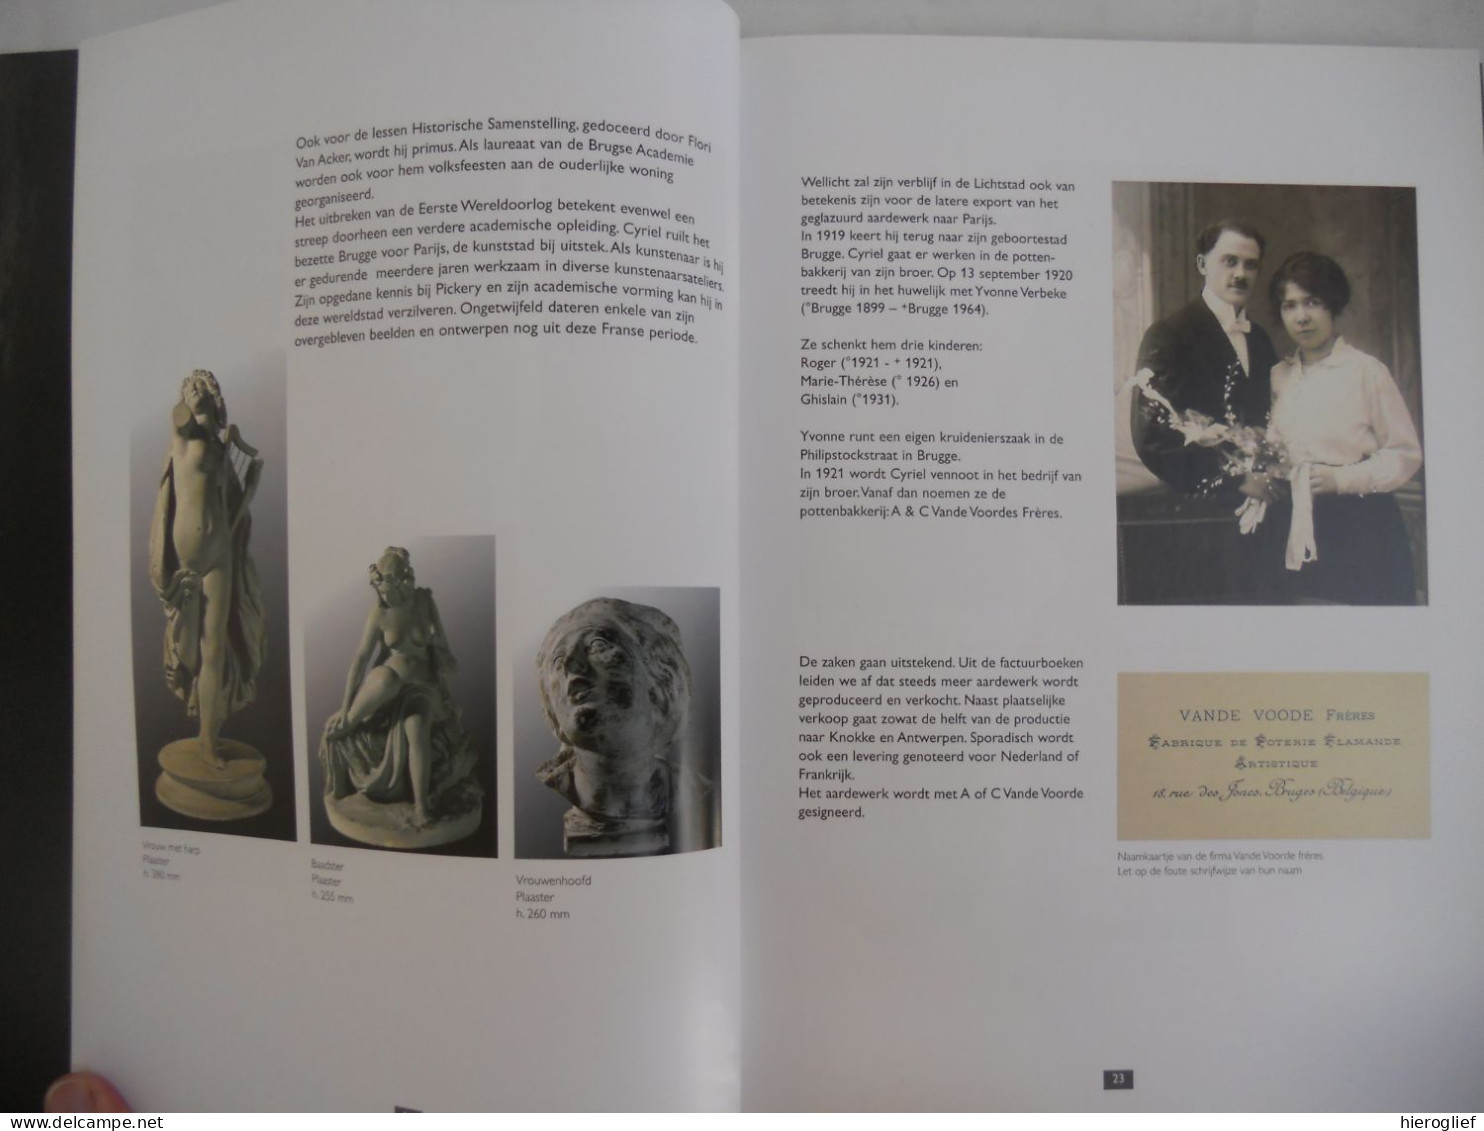 Brugs Aardewerk Vande Voorde - door Logghe Verhelle Coenye 2001 / poterie flamande vlaams Brugge vandevoorde Vlaanderen